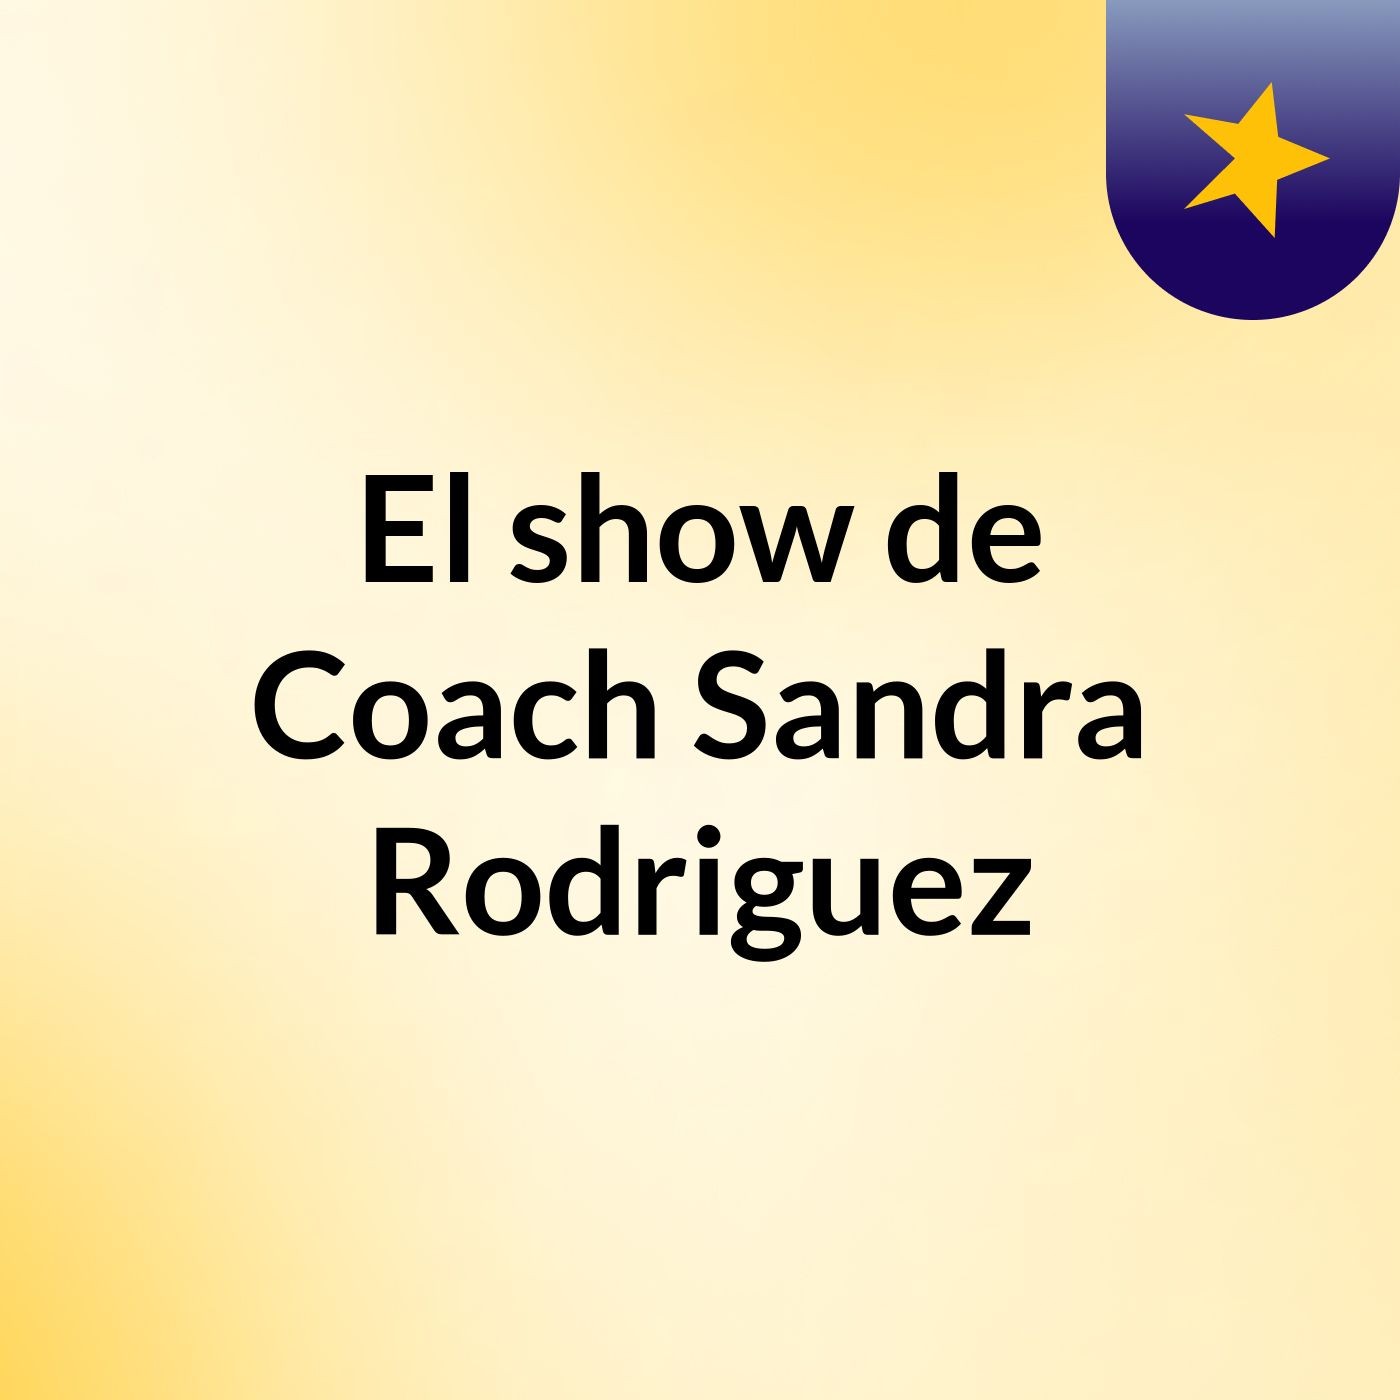 El show de Coach Sandra Rodriguez